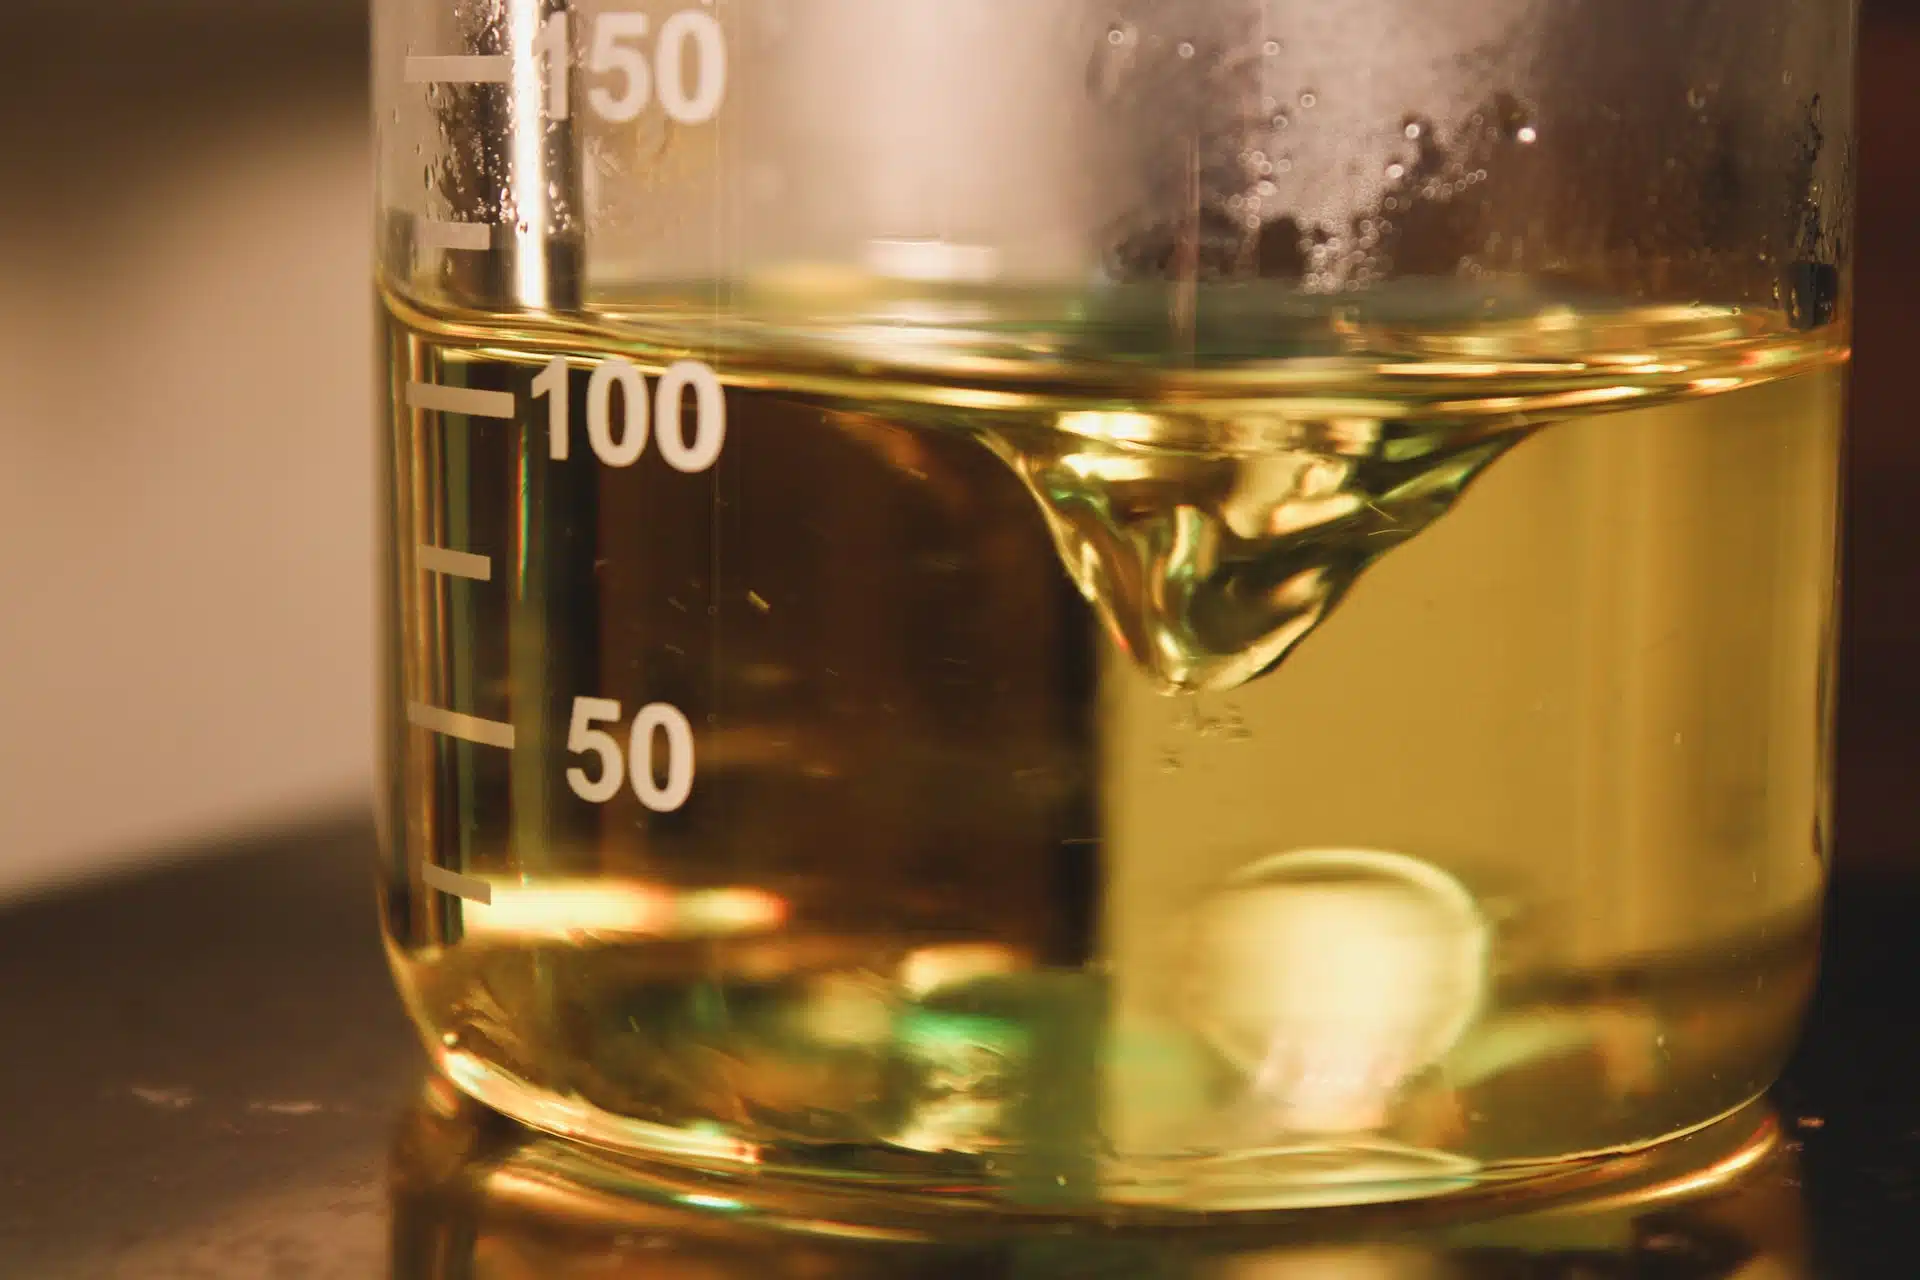 Oil in a measuring jug